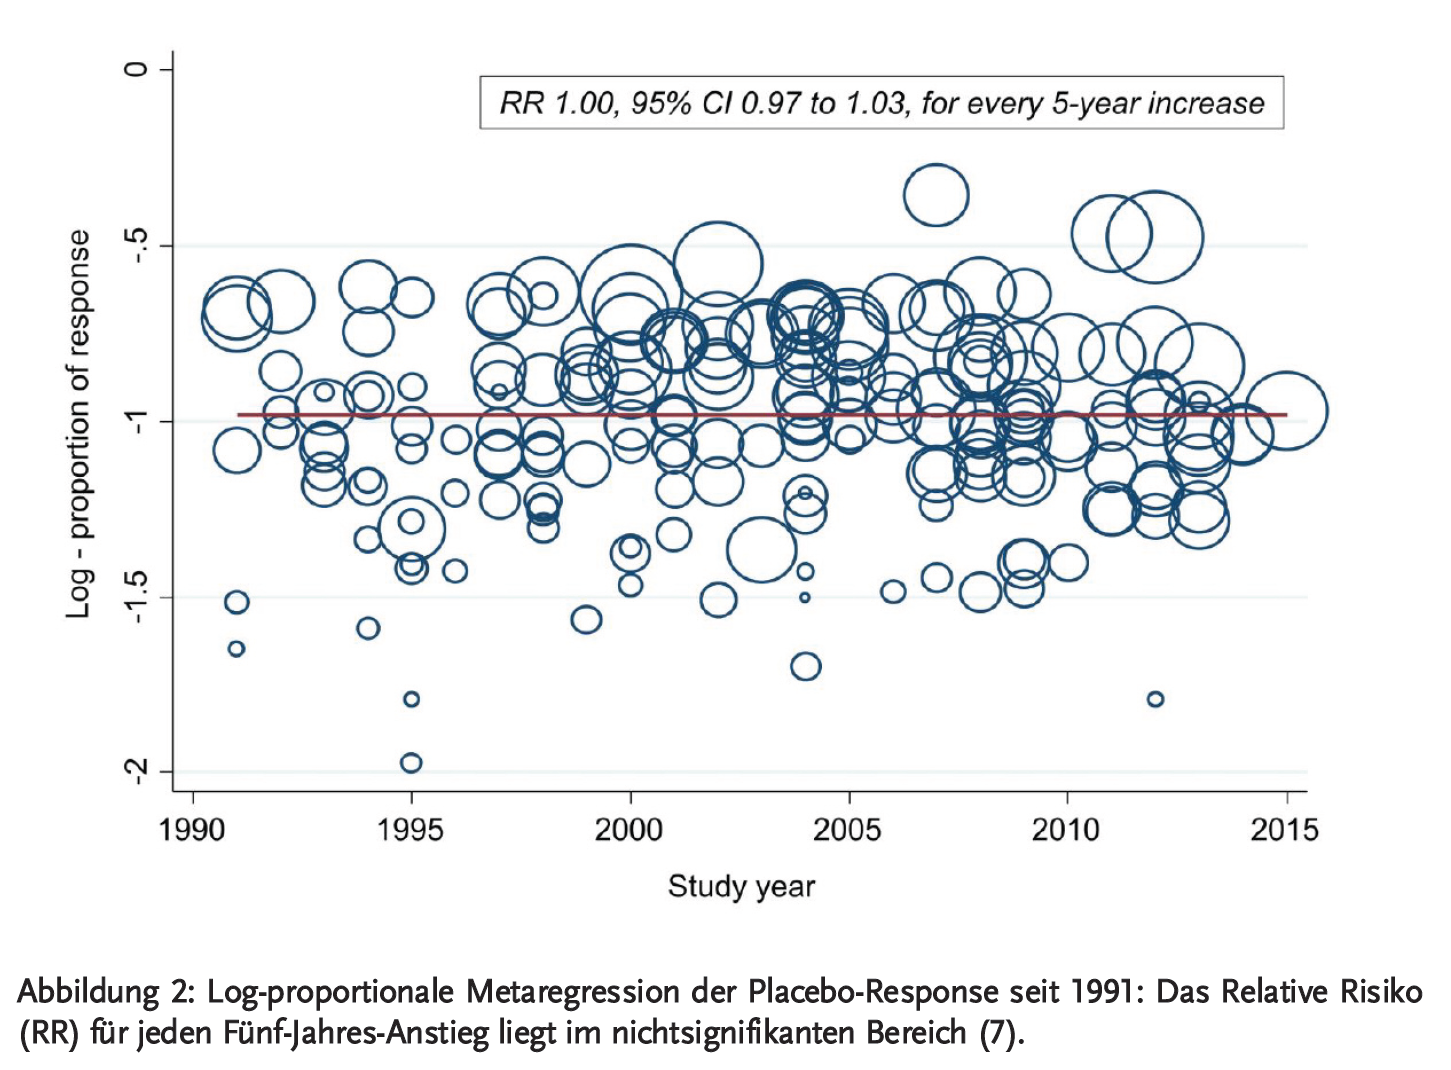 Abbildung 2: Log-proportionale Metaregression der Placebo-Response seit 1991: Das Relative Risiko (RR) für jeden Fünf-Jahres-Anstieg liegt im nichtsignifikanten Bereich (7)